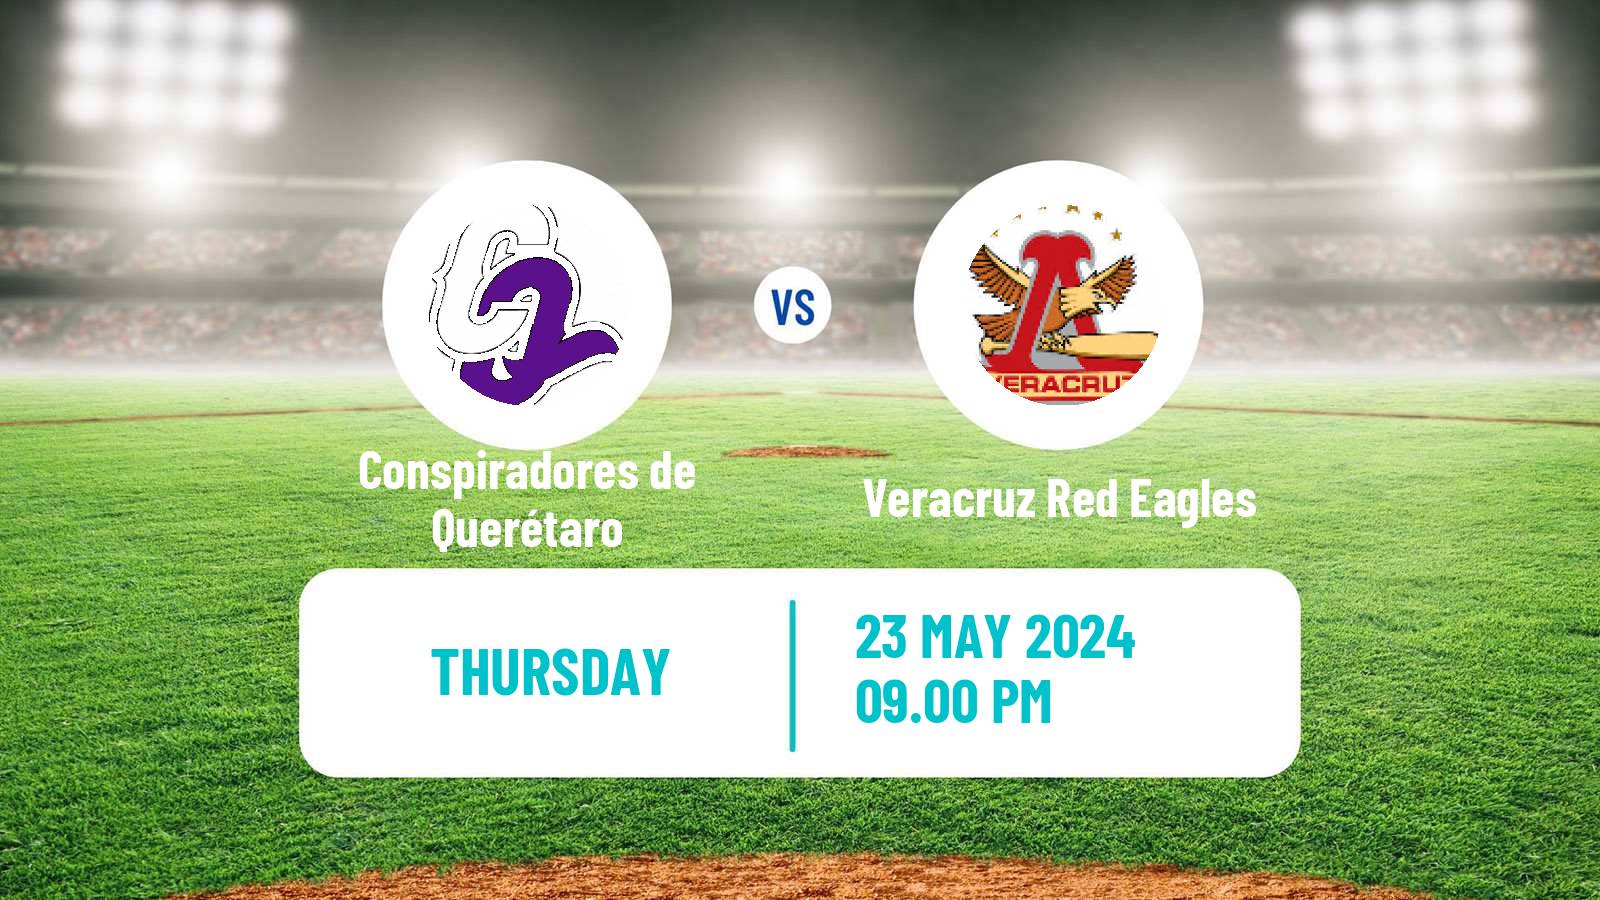 Baseball LMB Conspiradores de Querétaro - Veracruz Red Eagles